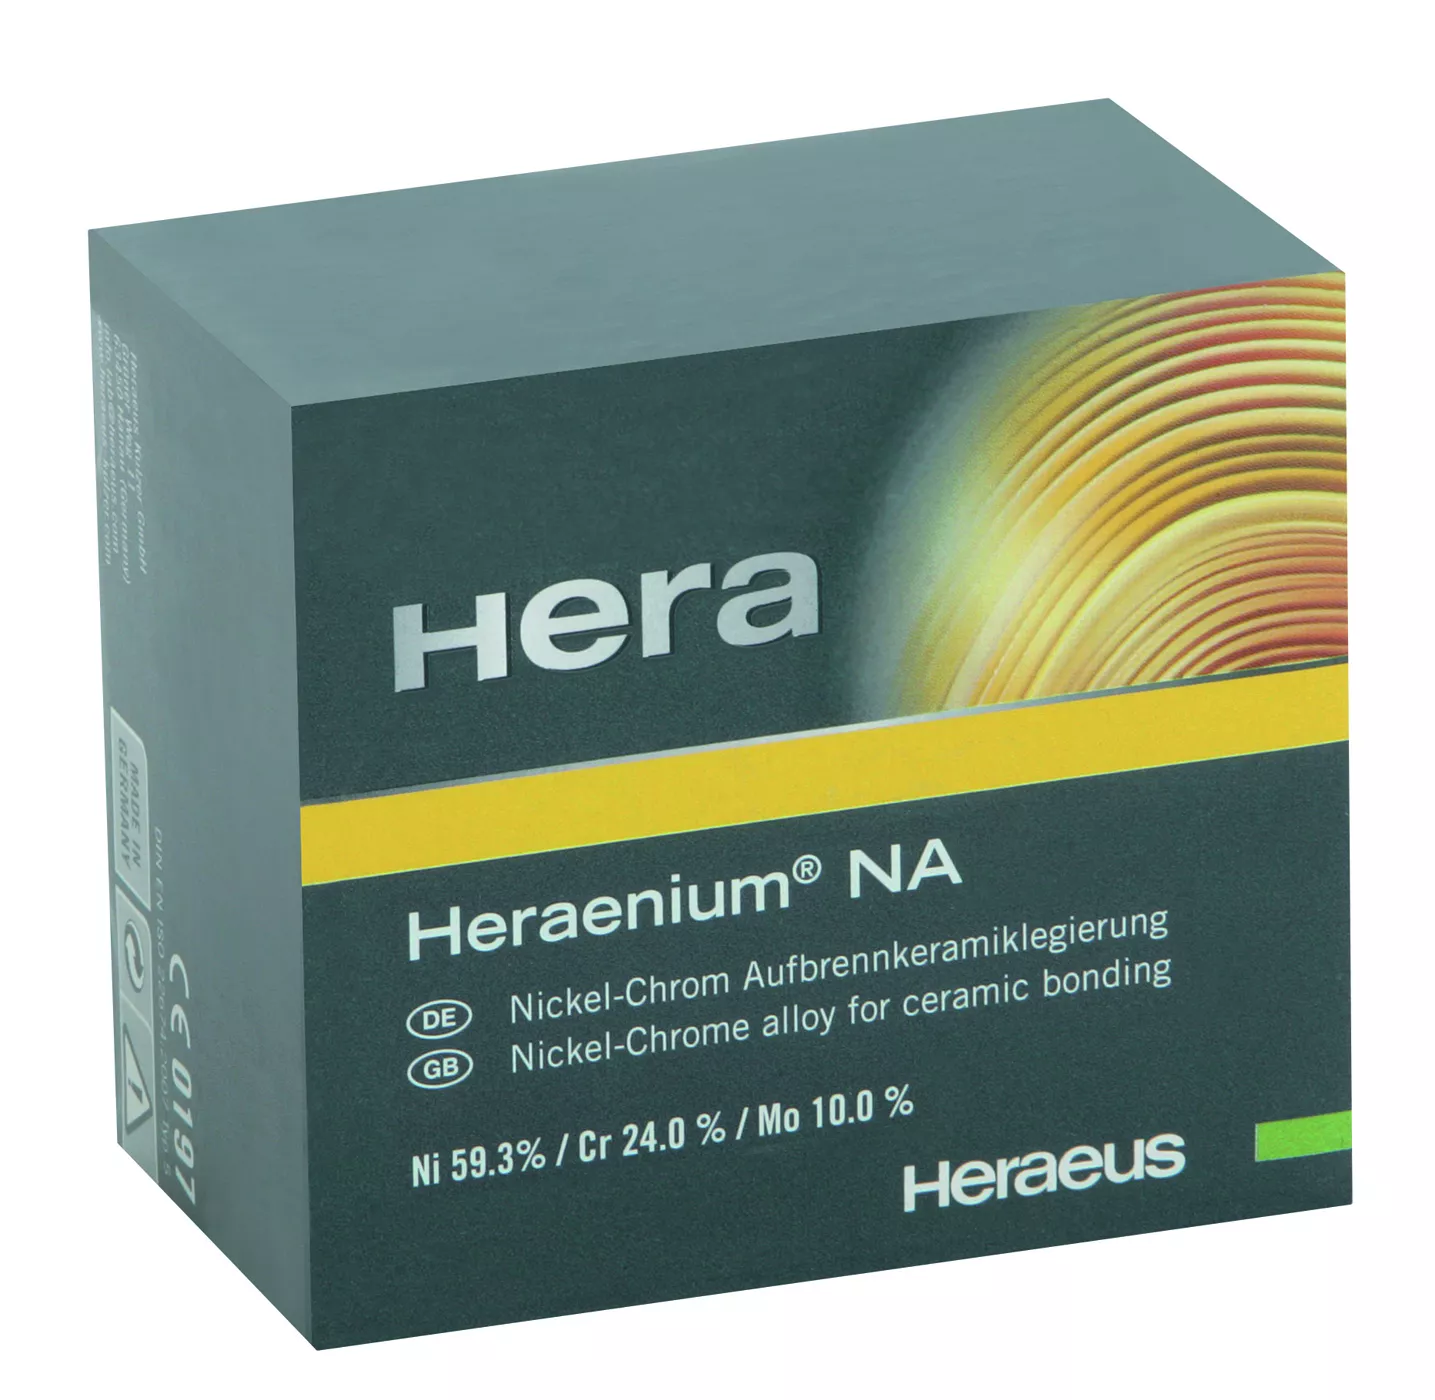 Heraenium NA  (1000г)  дентальный сплав для керамики (Ni, Cr, Mo)